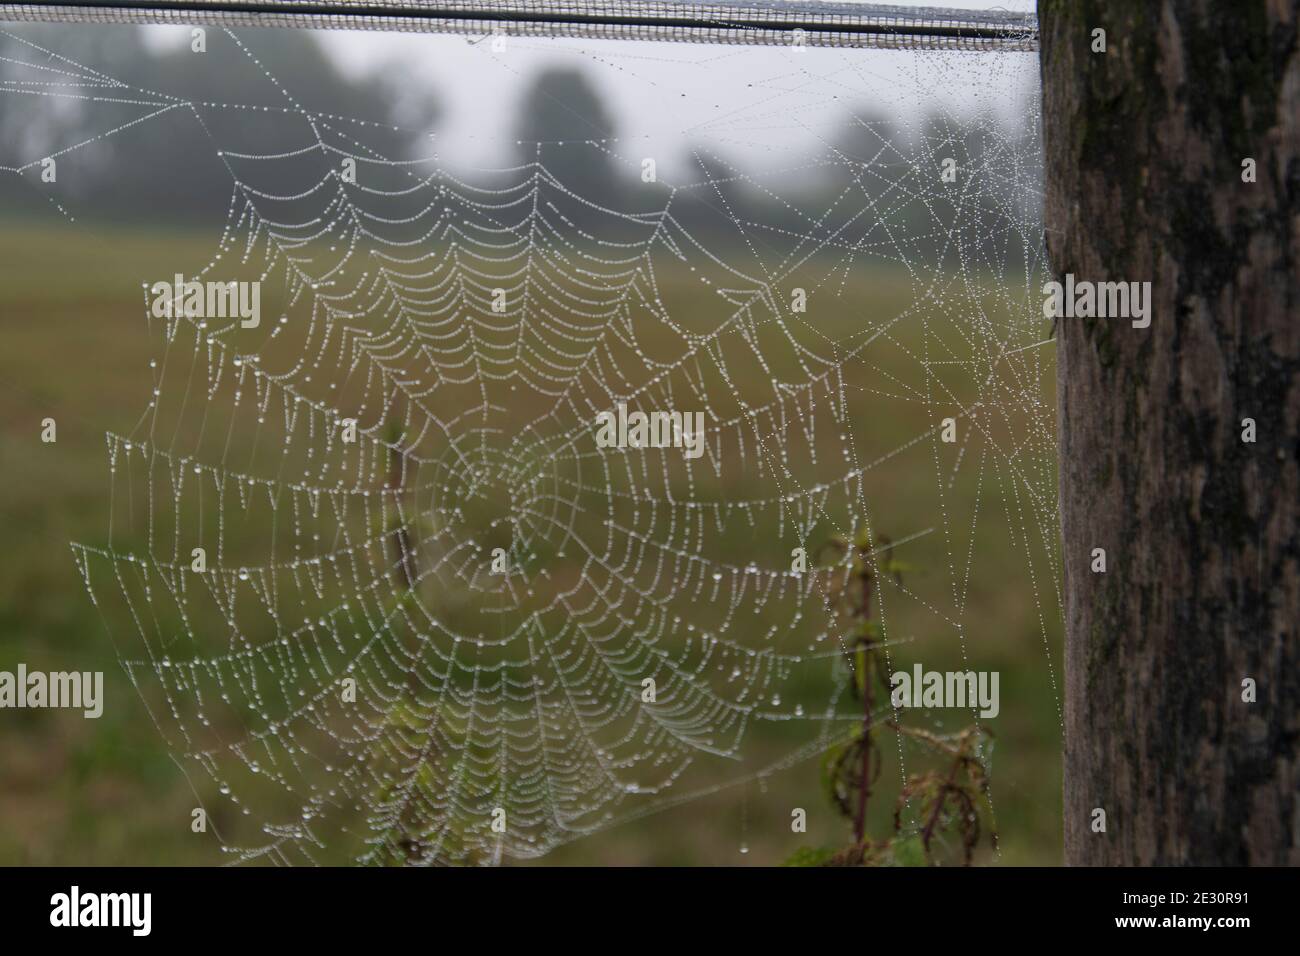 Toile d'araignée en début de matinée couverte de brouillard avec petites gouttelettes d'eau Banque D'Images